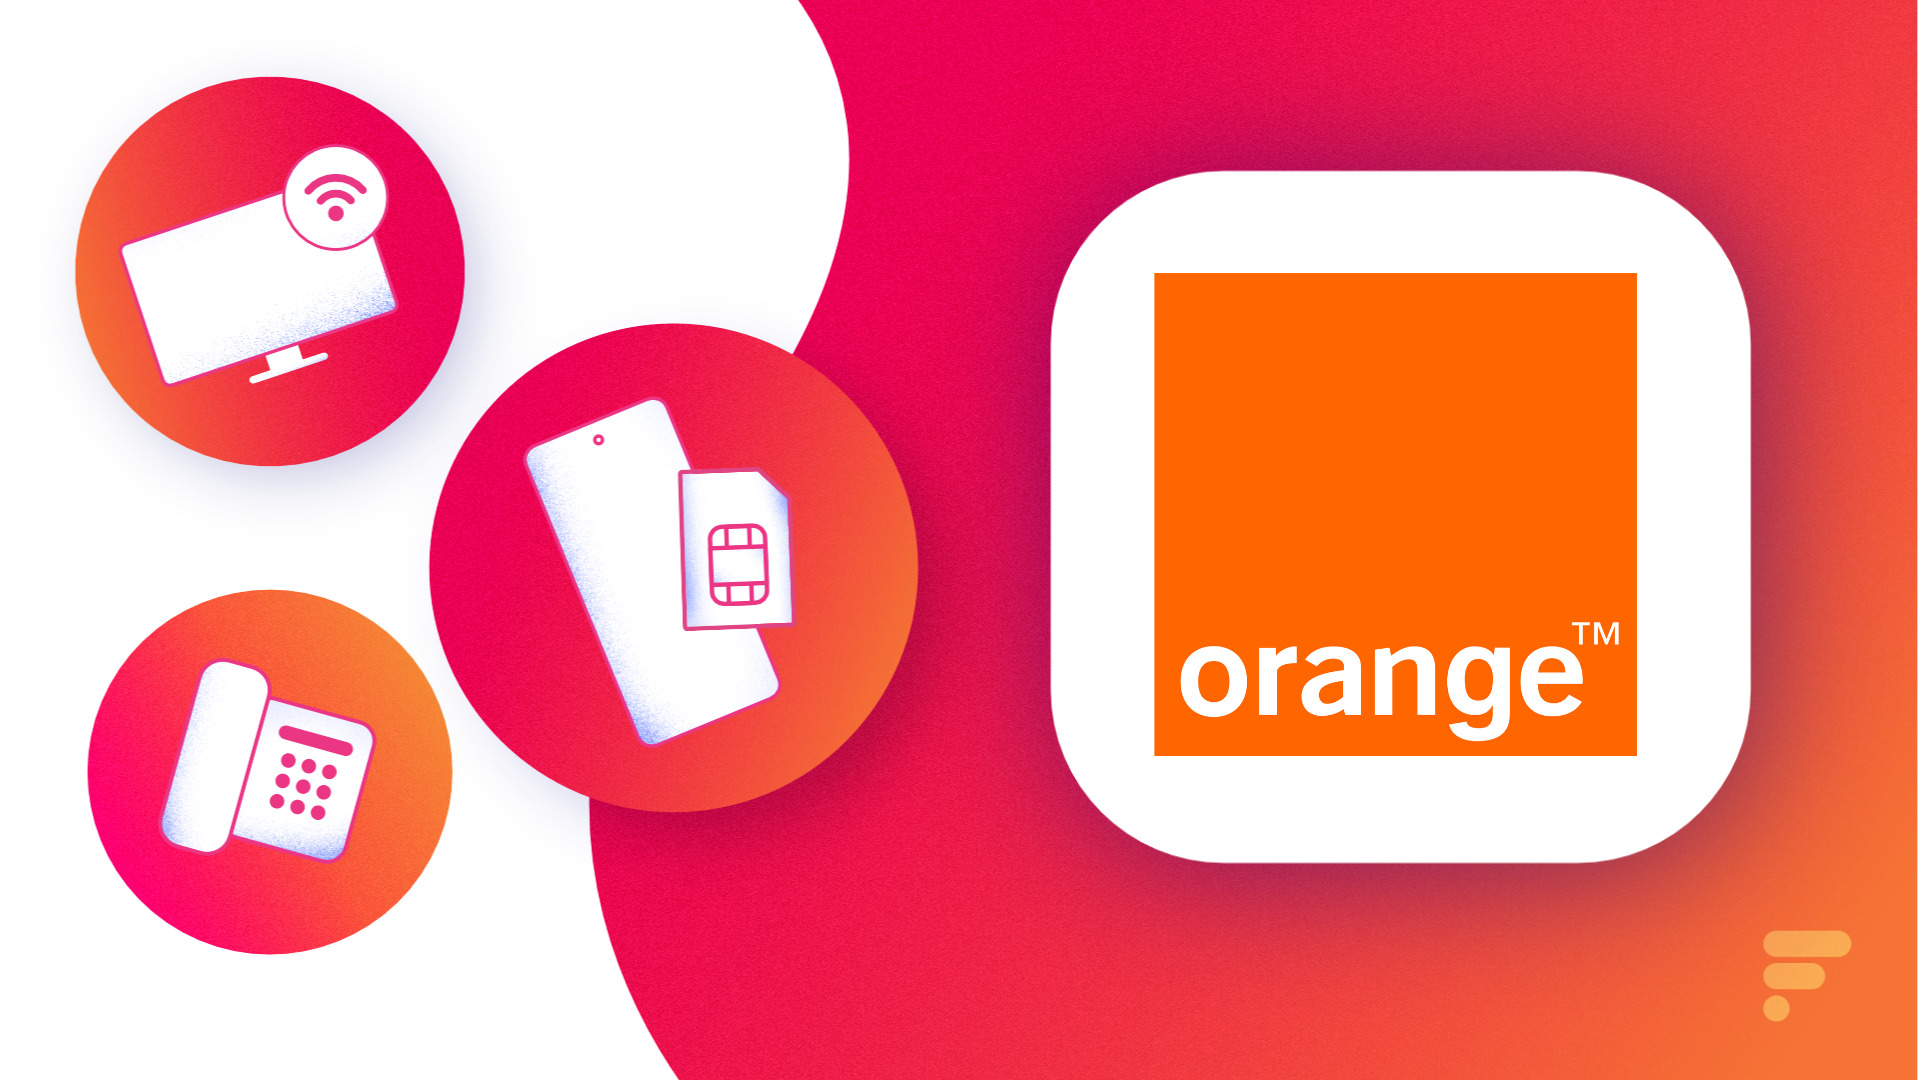 Clé TV 2 Orange : les chaînes tv d'Orange dès 3,99€/mois